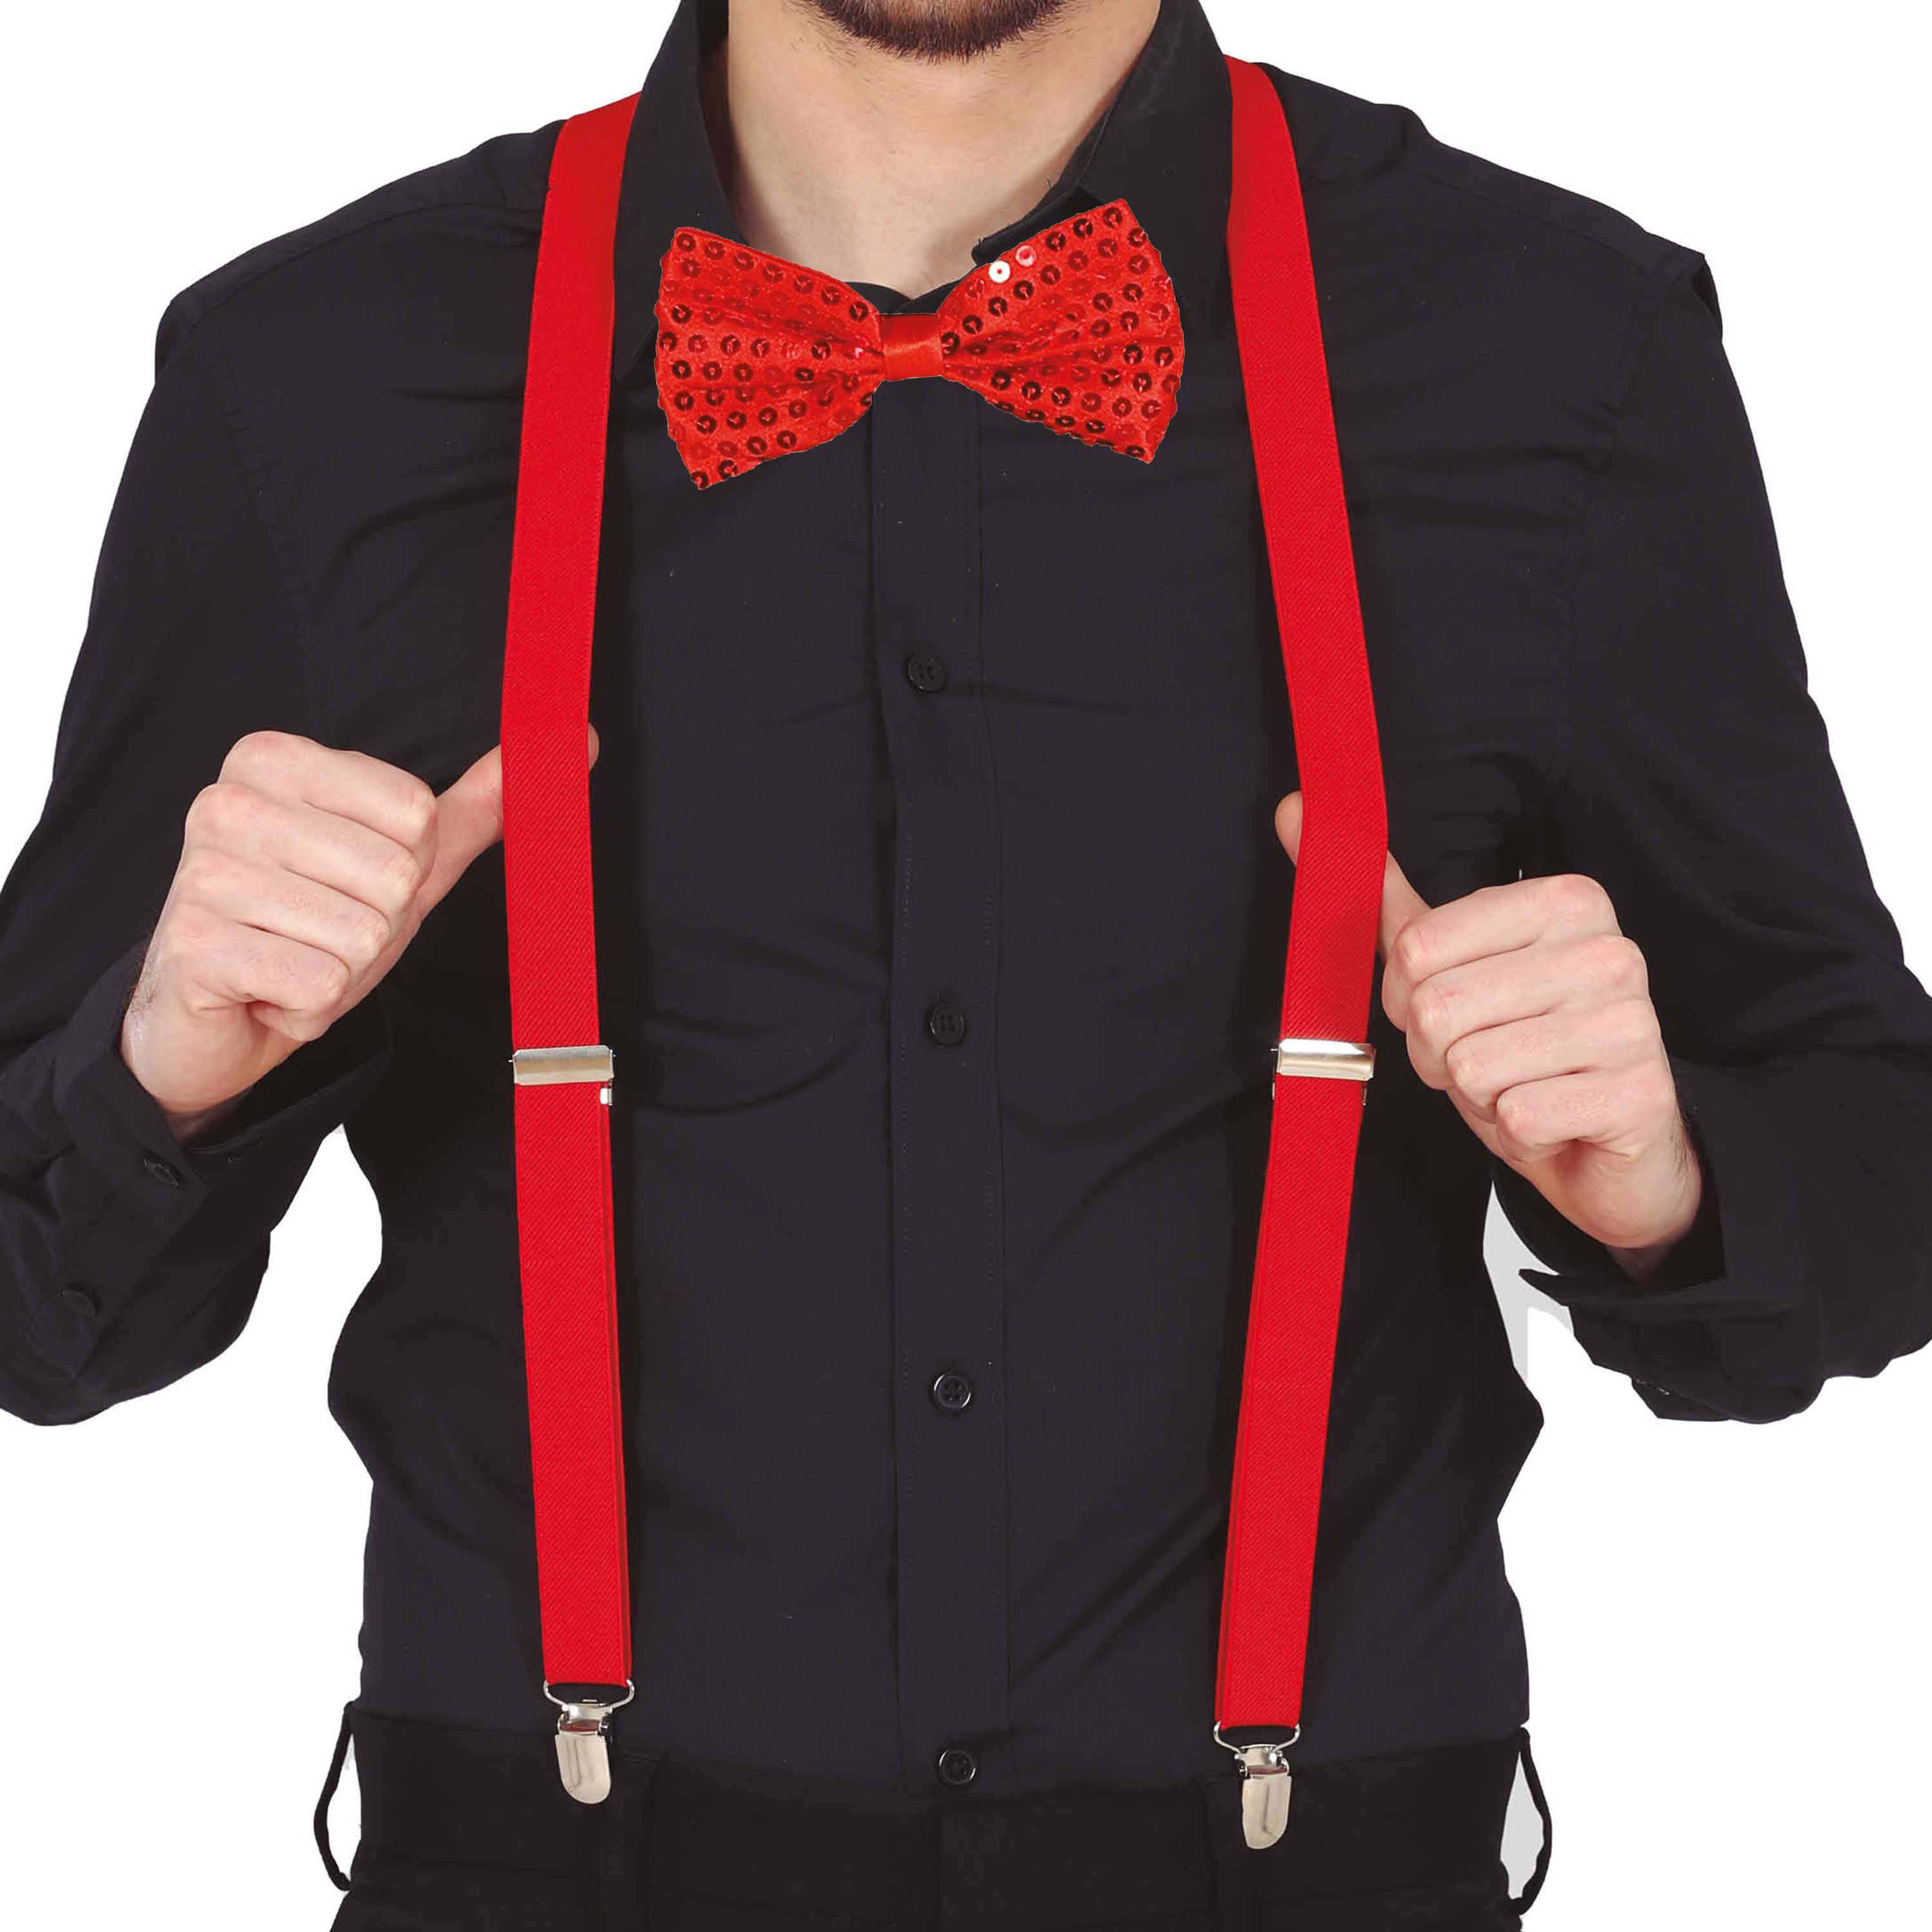 Carnaval verkleed bretels en strikje - rood - volwassenen - verkleed accessoires -